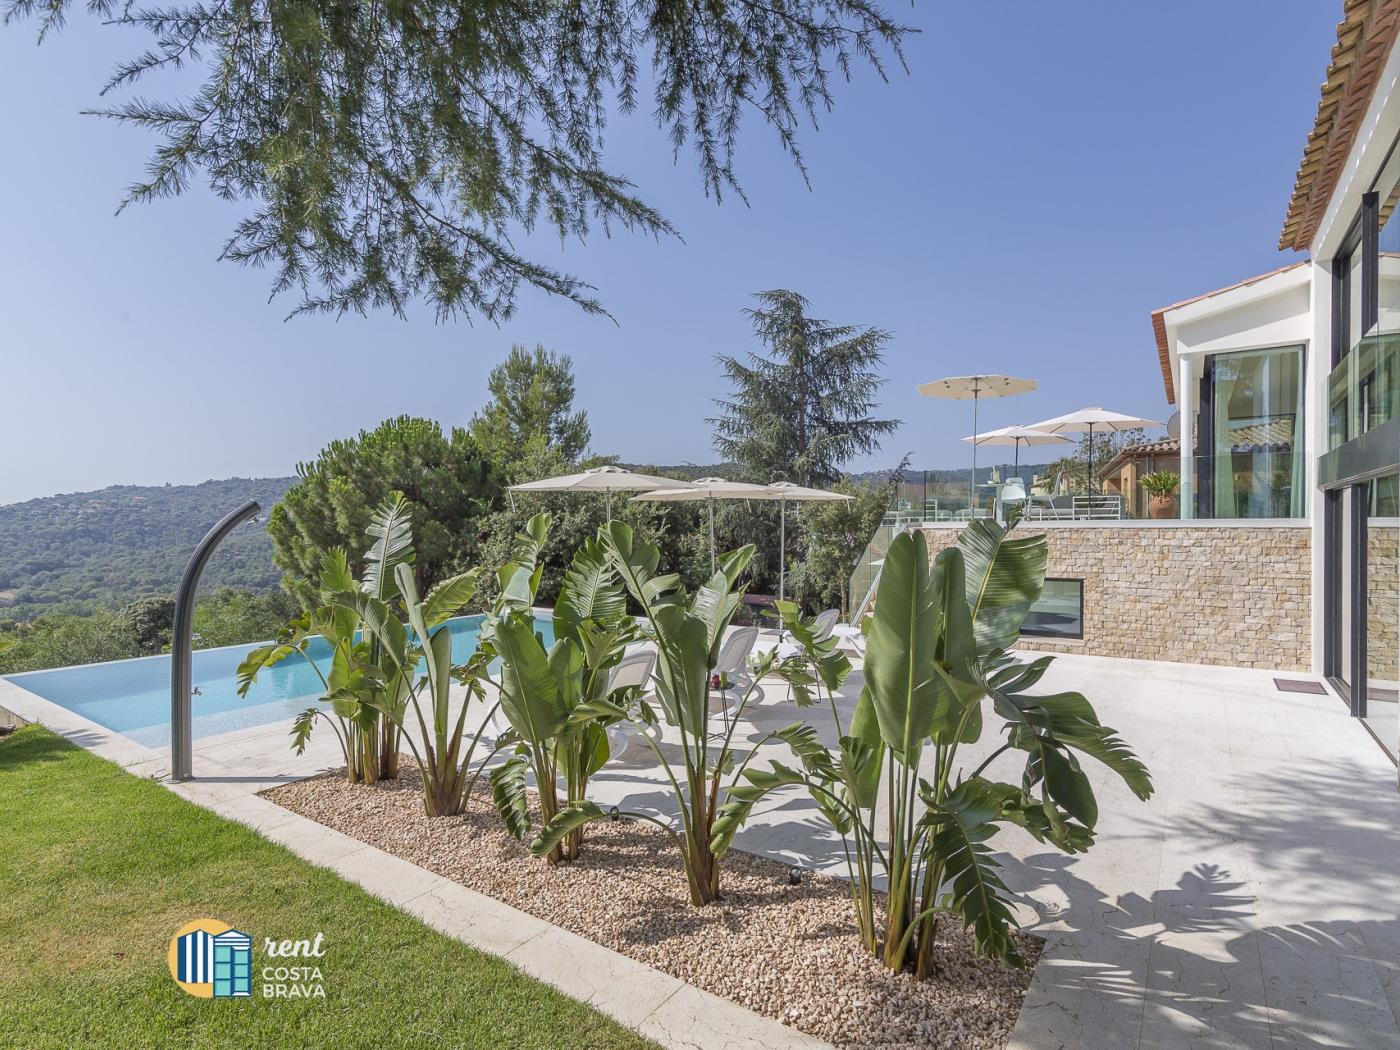 Villa la Dolça con piscina infinita, WIFI gratuito, aire acondicionado. en Calonge